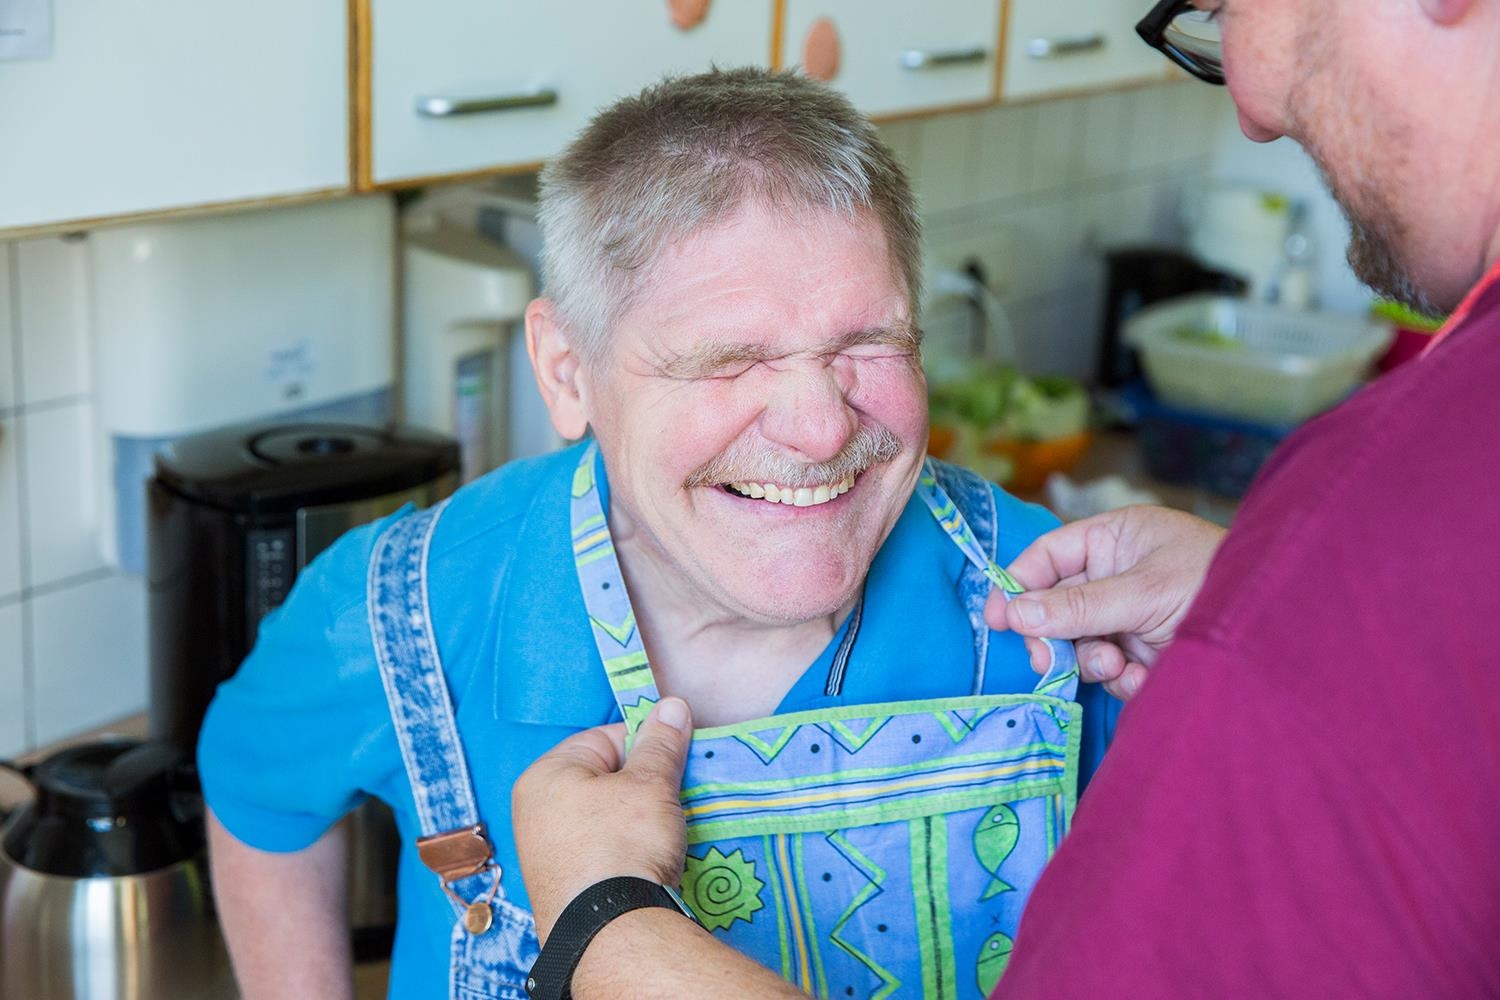 Ein Mann mit Behinderung lacht während einen Latz angelegt bekommt (Deutscher Caritasverband e. V. / Sebastian Pfütze)